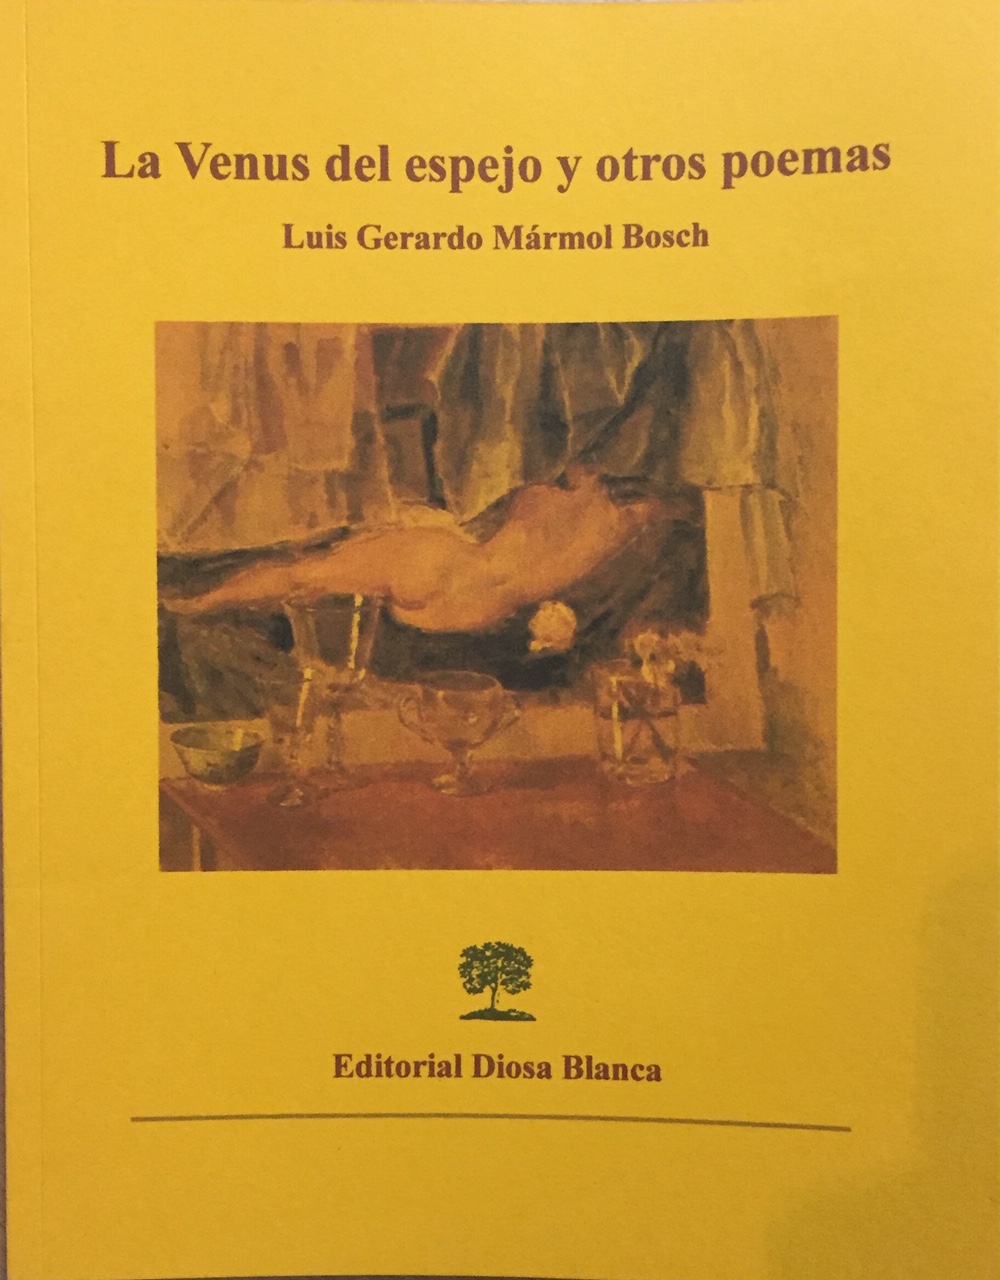 La Venus del espejo y otros poemas